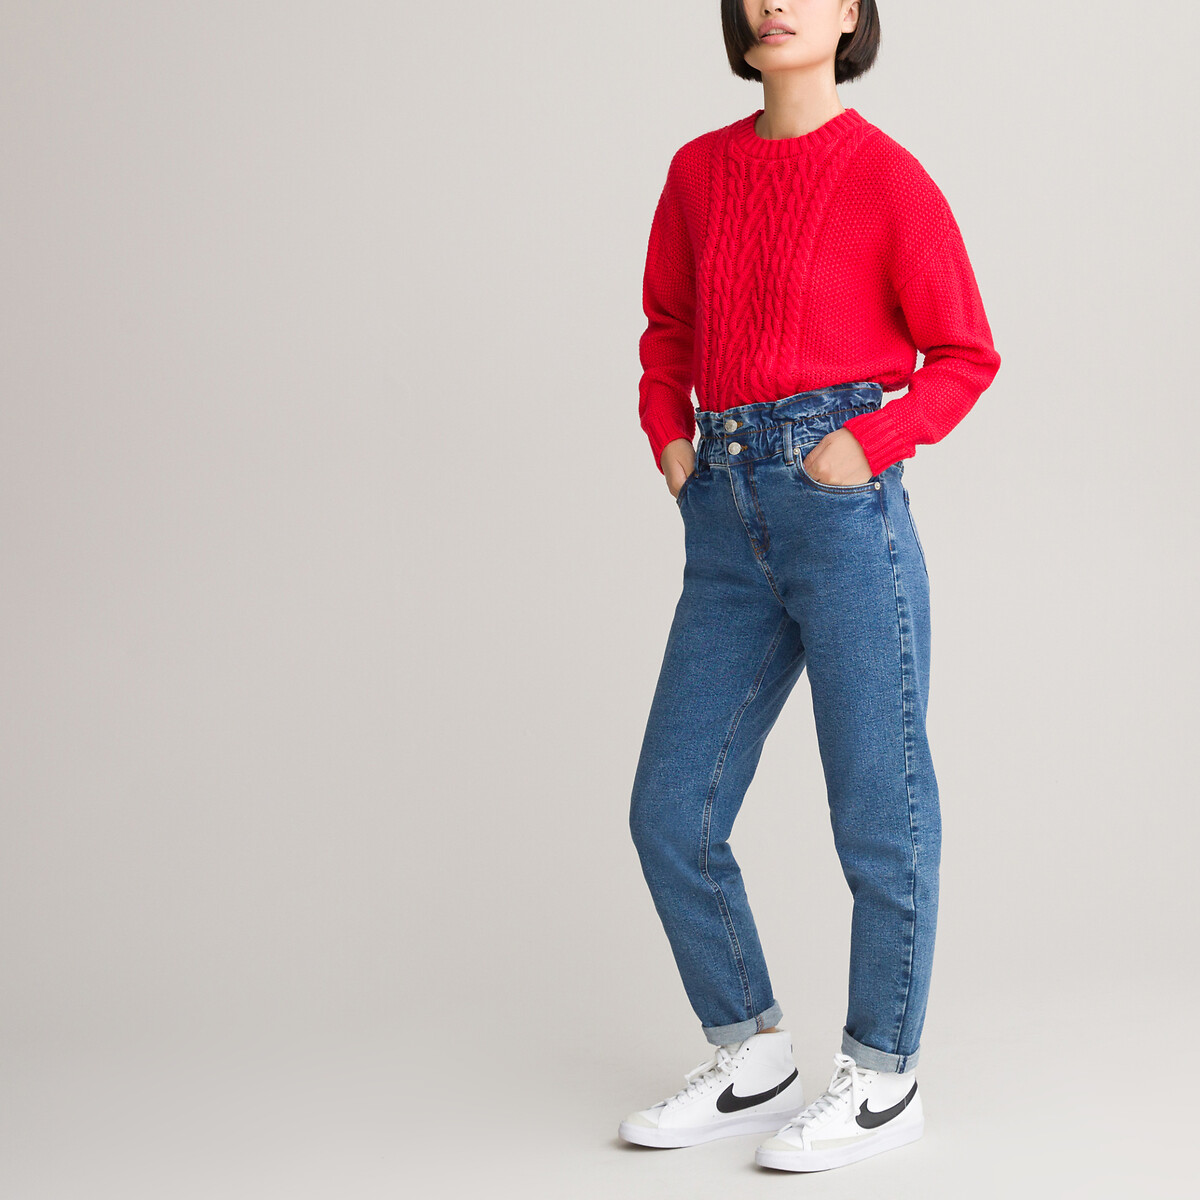 Пуловер LaRedoute С круглым вырезом из плотного трикотажа 10-18 лет 10 лет - 138 см красный, размер 10 лет - 138 см - фото 2